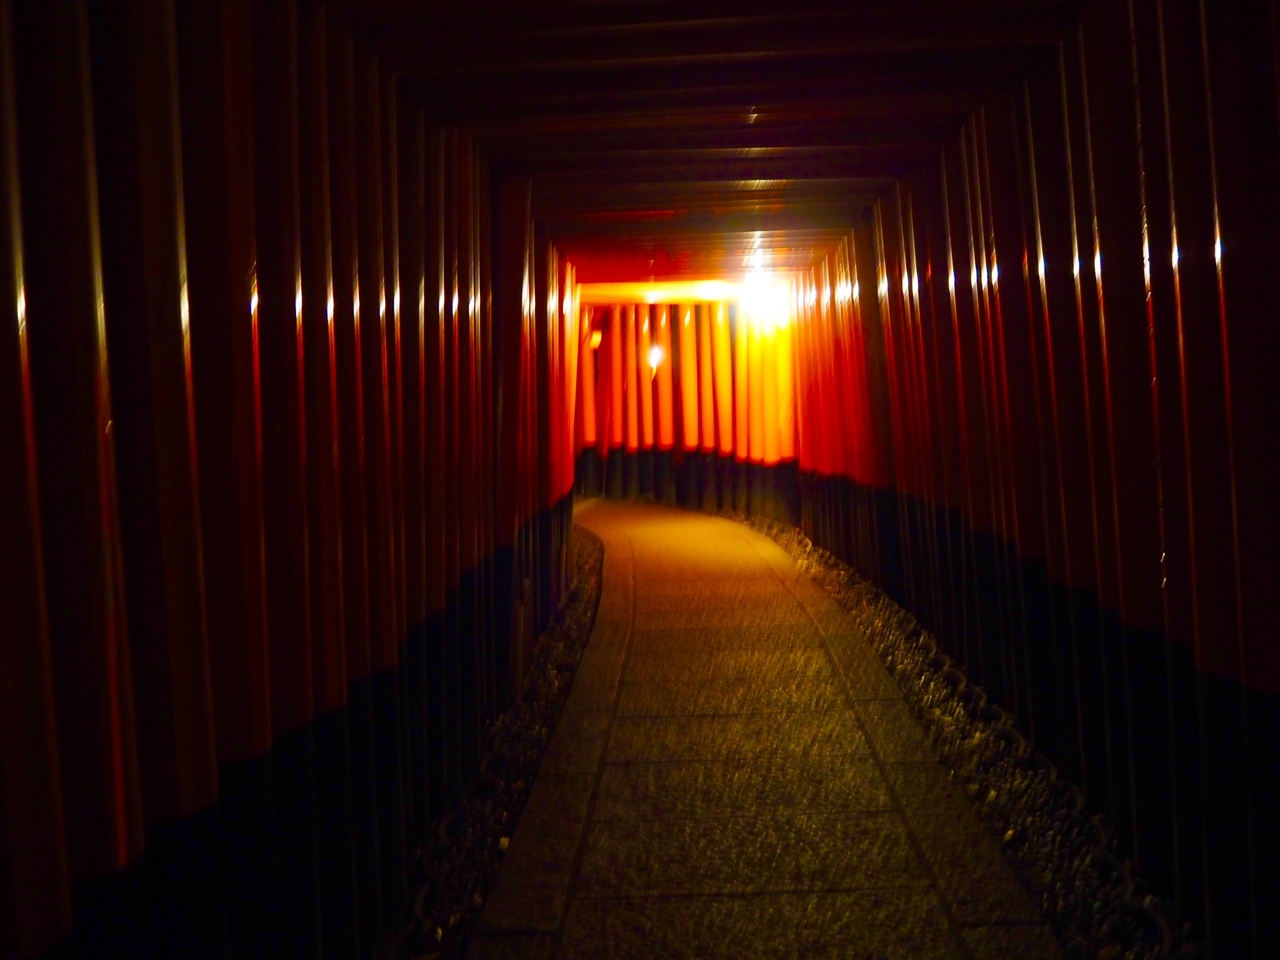 夜の伏見稲荷は少し怖くてでも幻想的 伏見 京都 の旅行記 ブログ By えるざさん フォートラベル